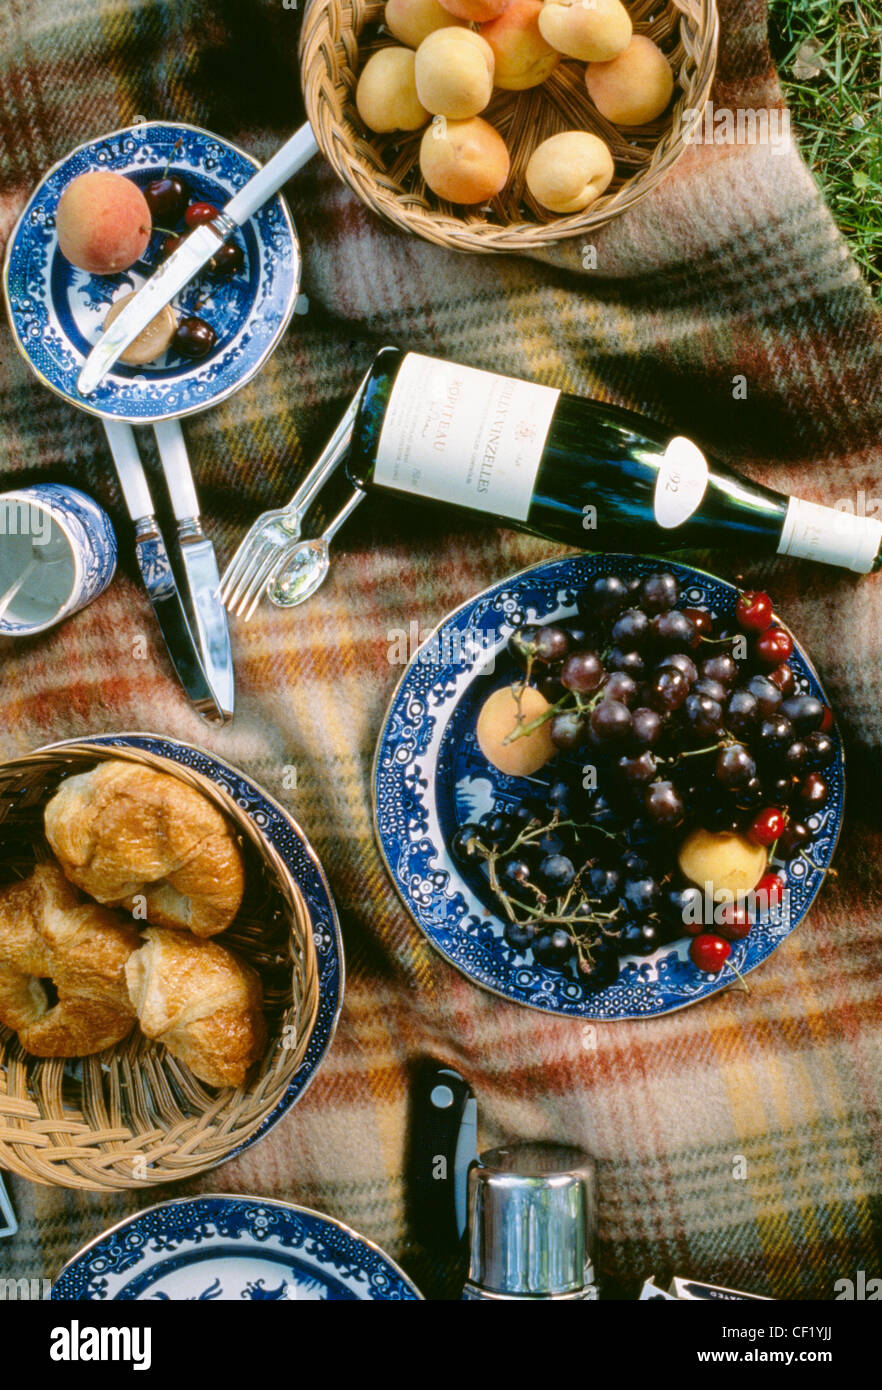 NOTSALE IN Finnland, Schweden, Norwegen, Dänemark und Italien Luftbild Picknick Teppich blau-weiße China halten Appricots, Stockfoto